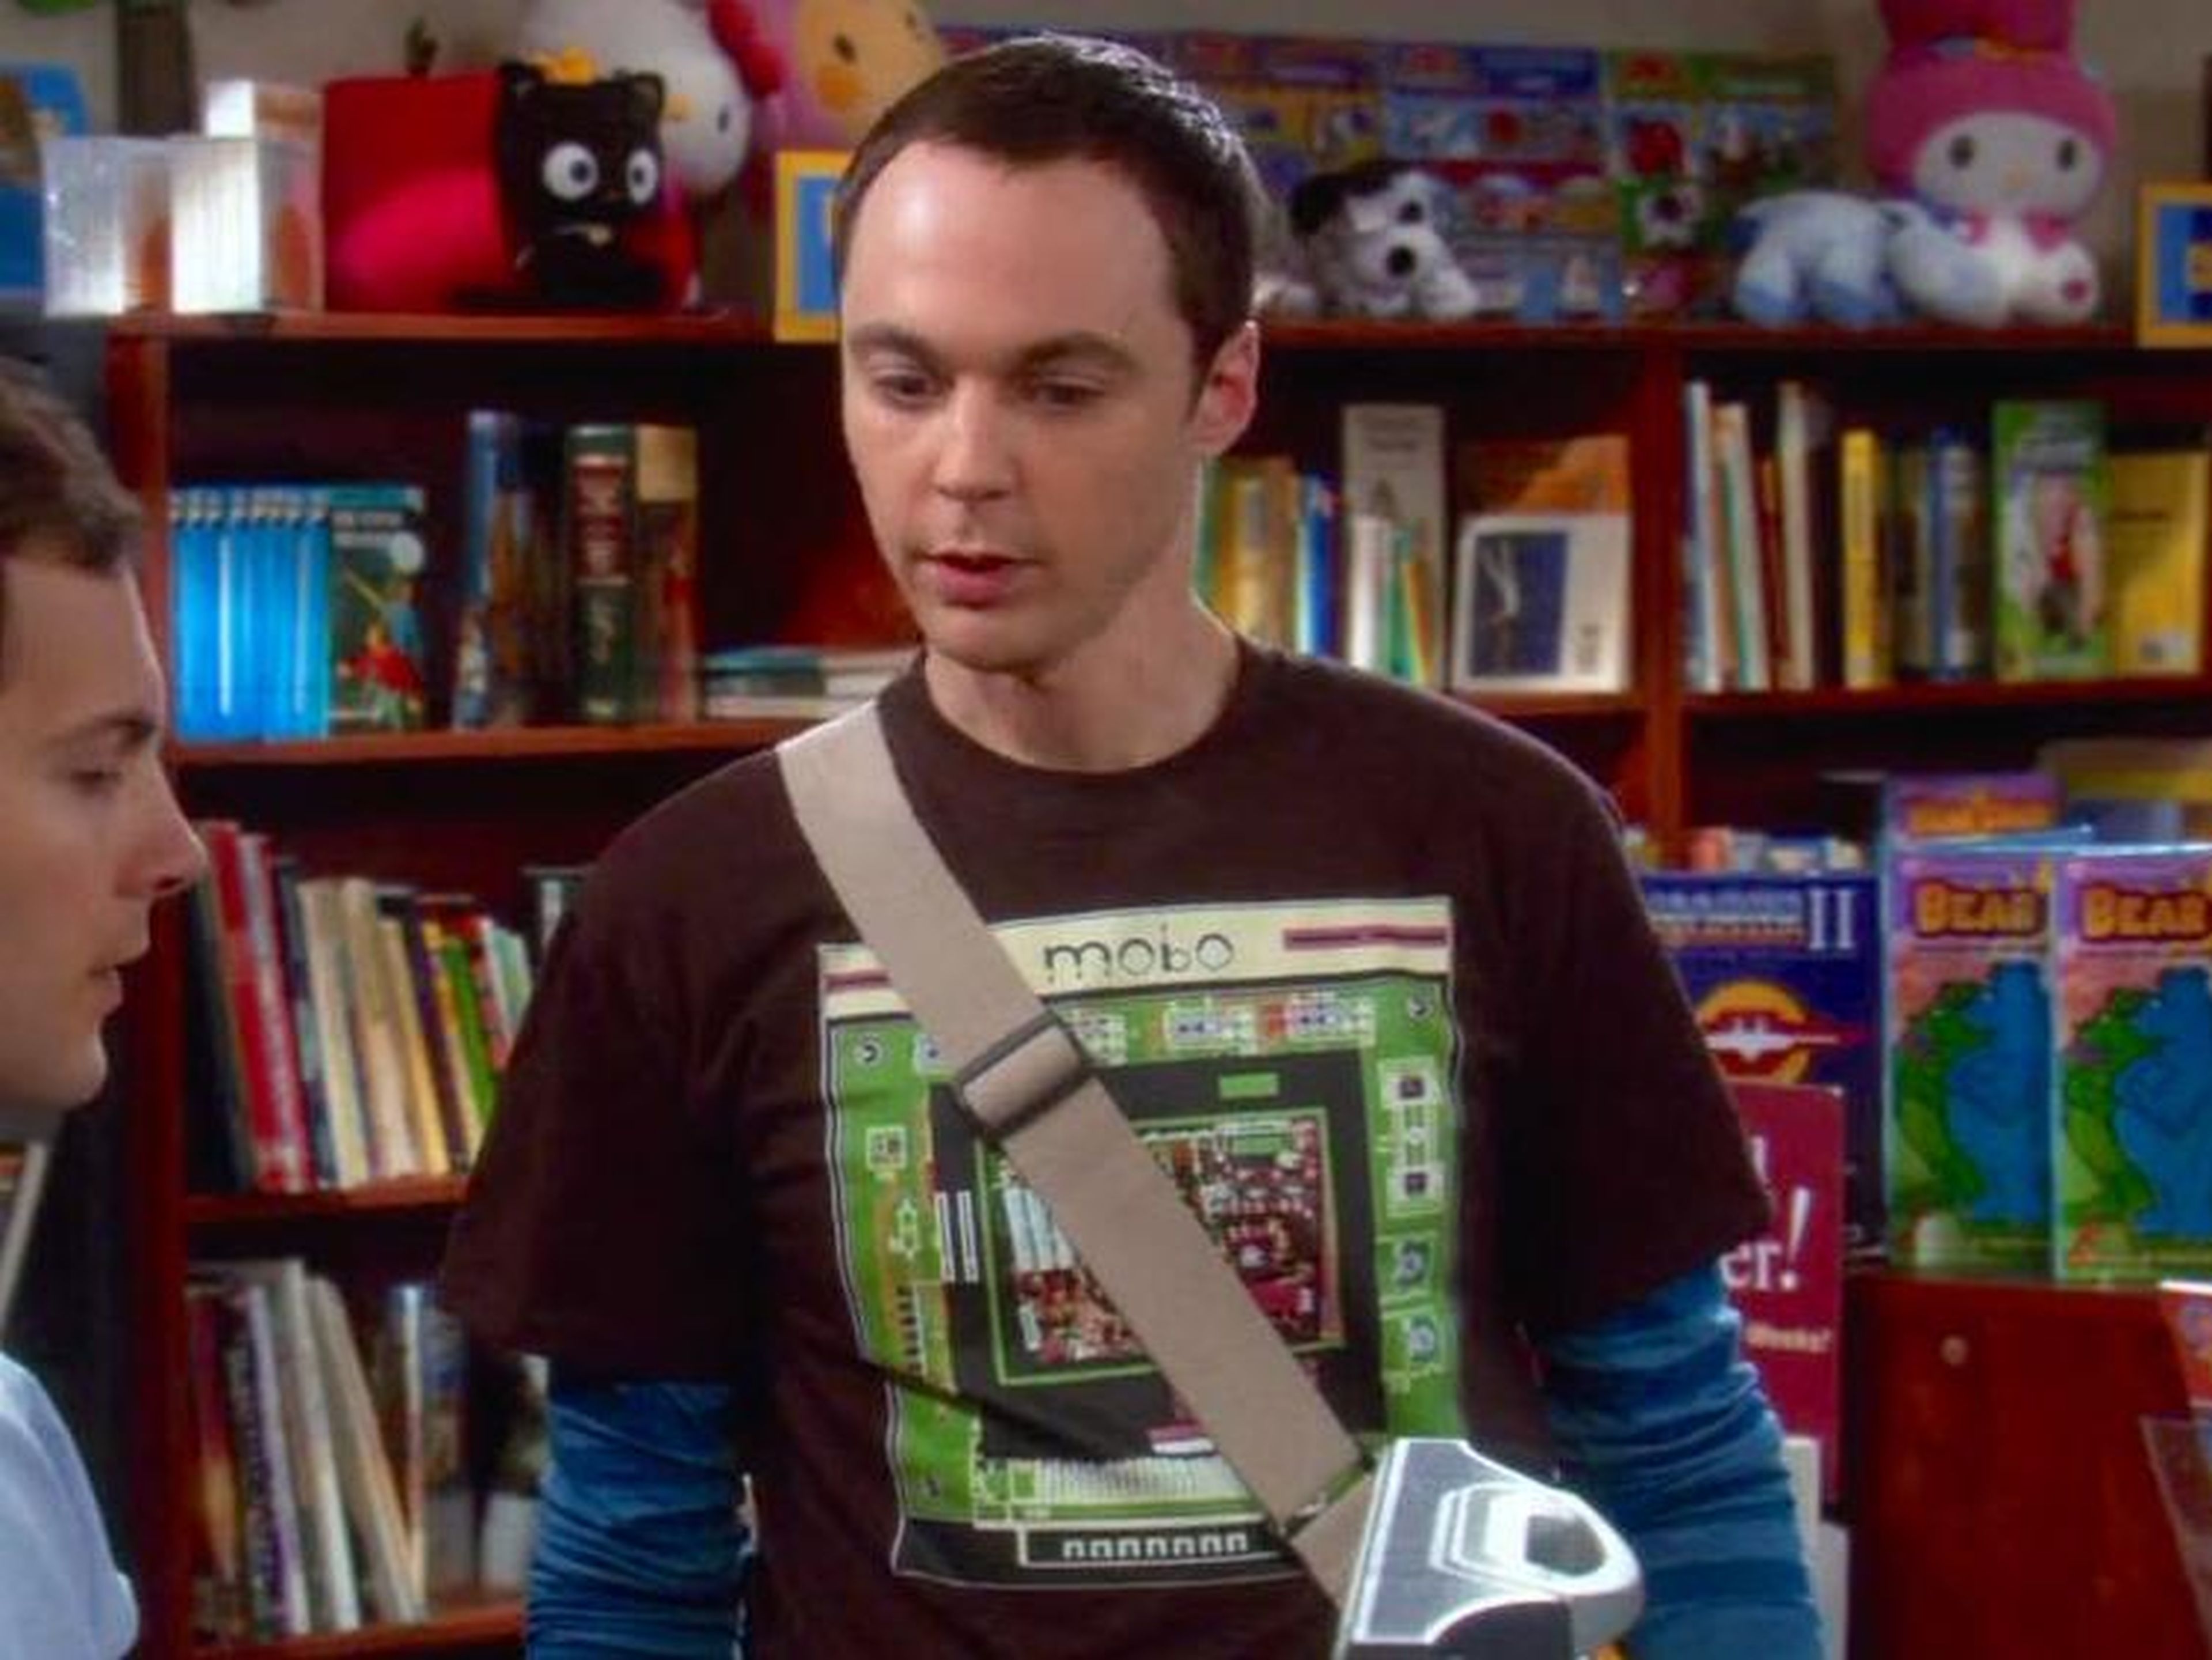 Nadie parece entender del todo la fecha de cumpleaños de Sheldon.